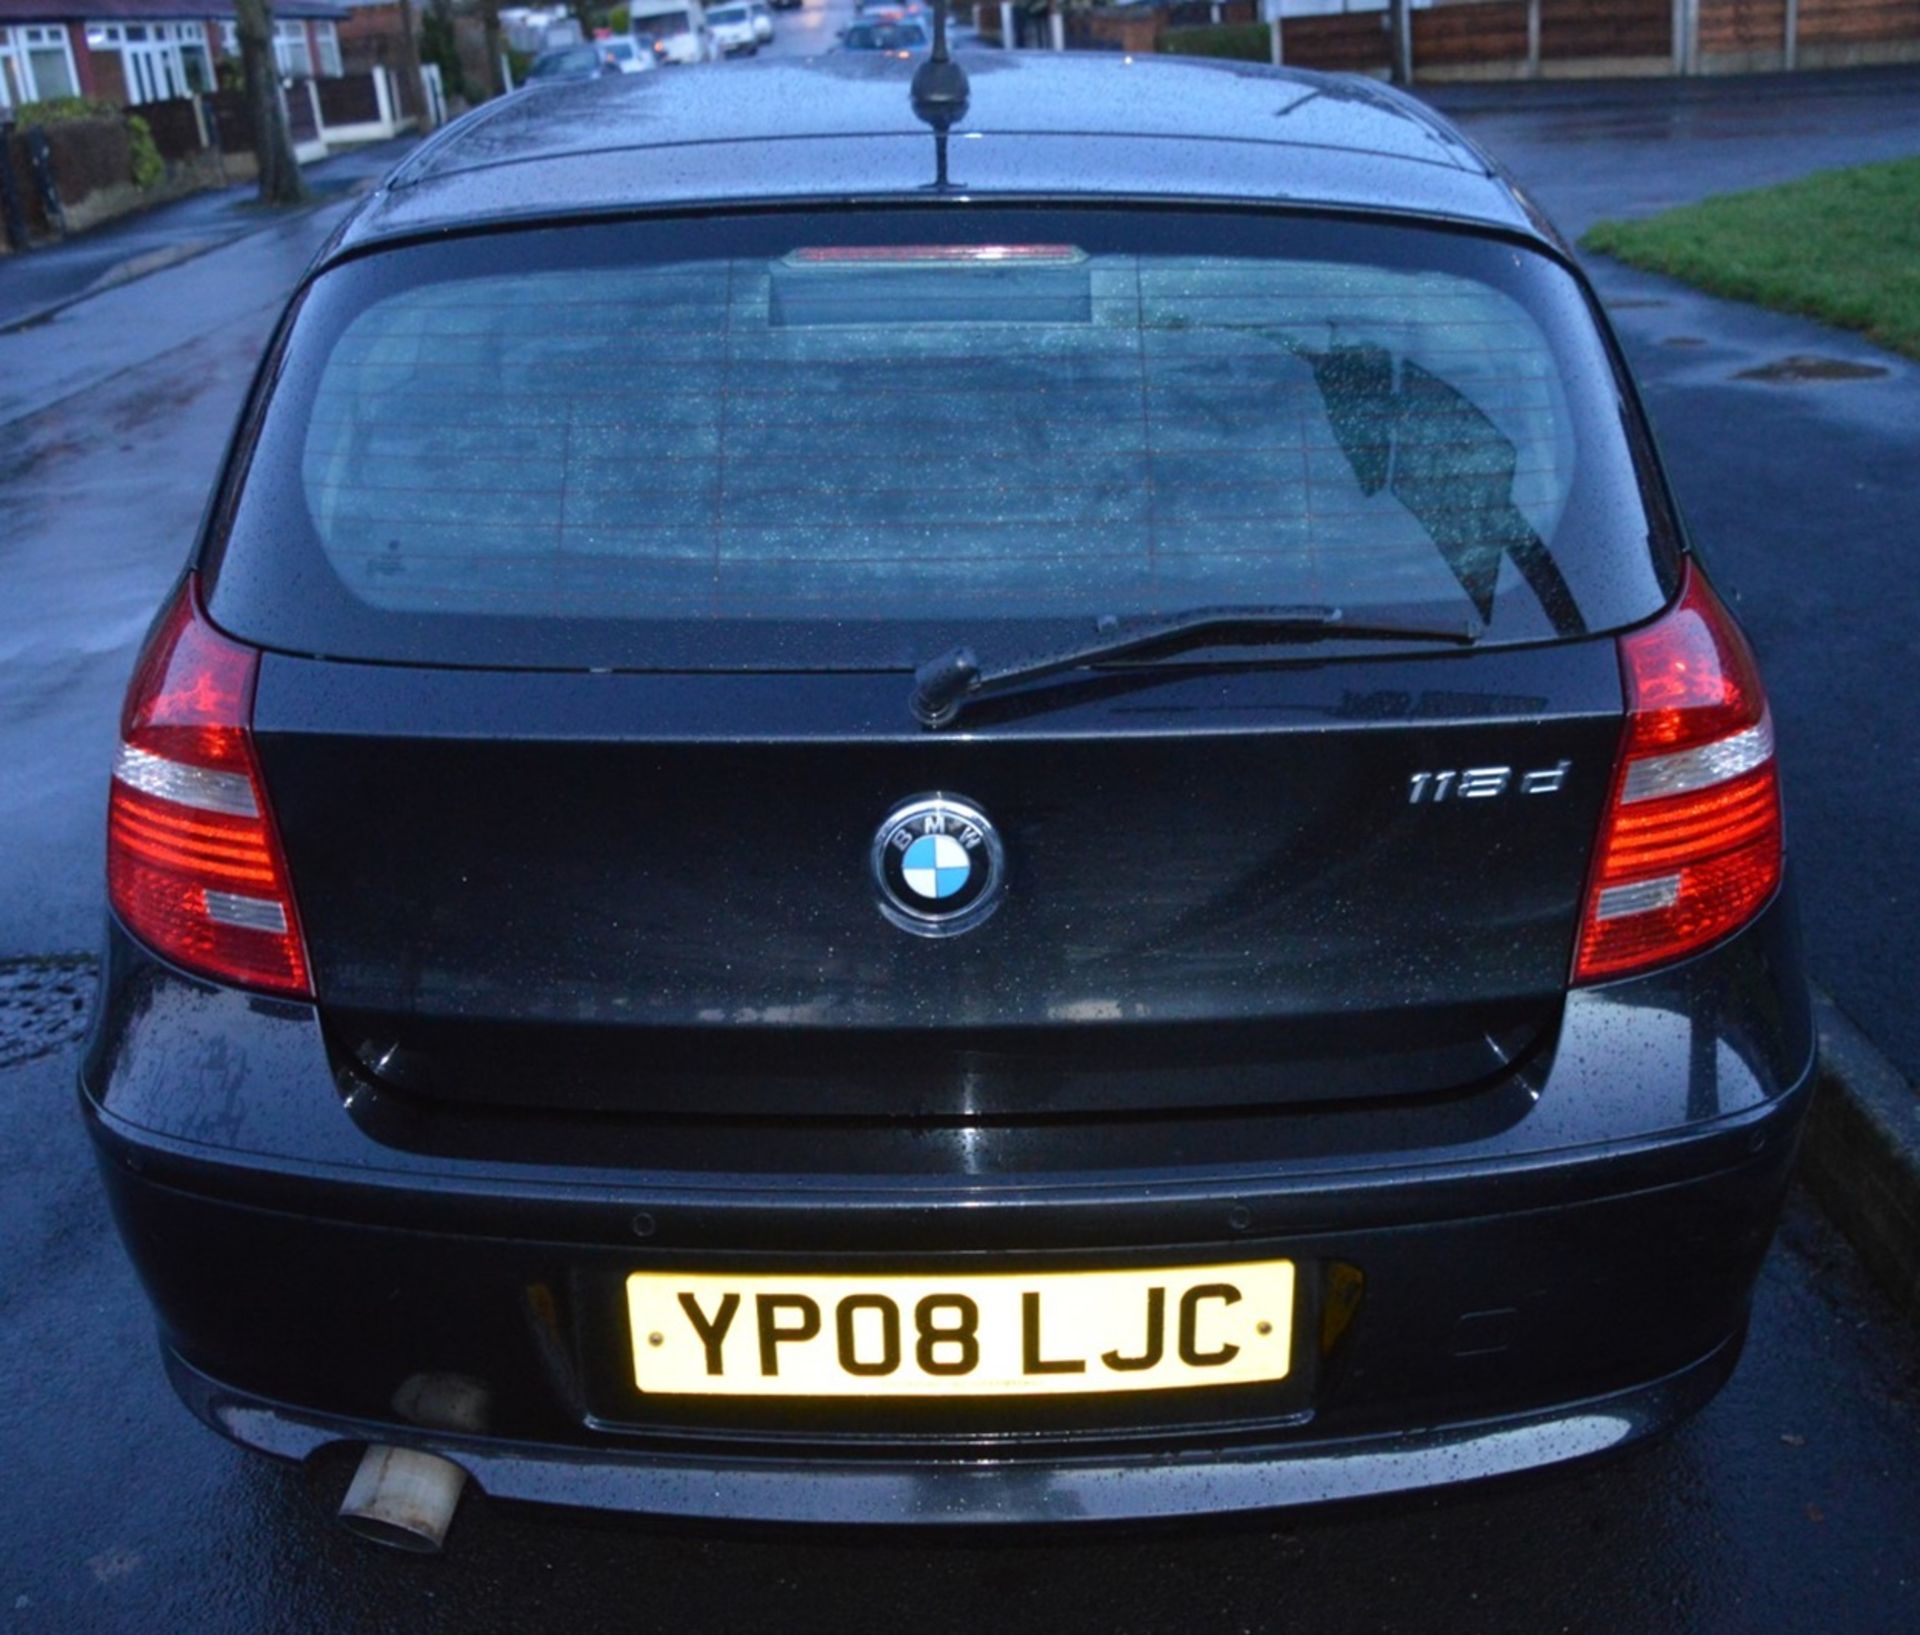 1 x 2008 BMW 1 Series 118d 3 Door Black 2l - £30 Per Year Road Tax - MOT Until January 2020 - - Image 20 of 31